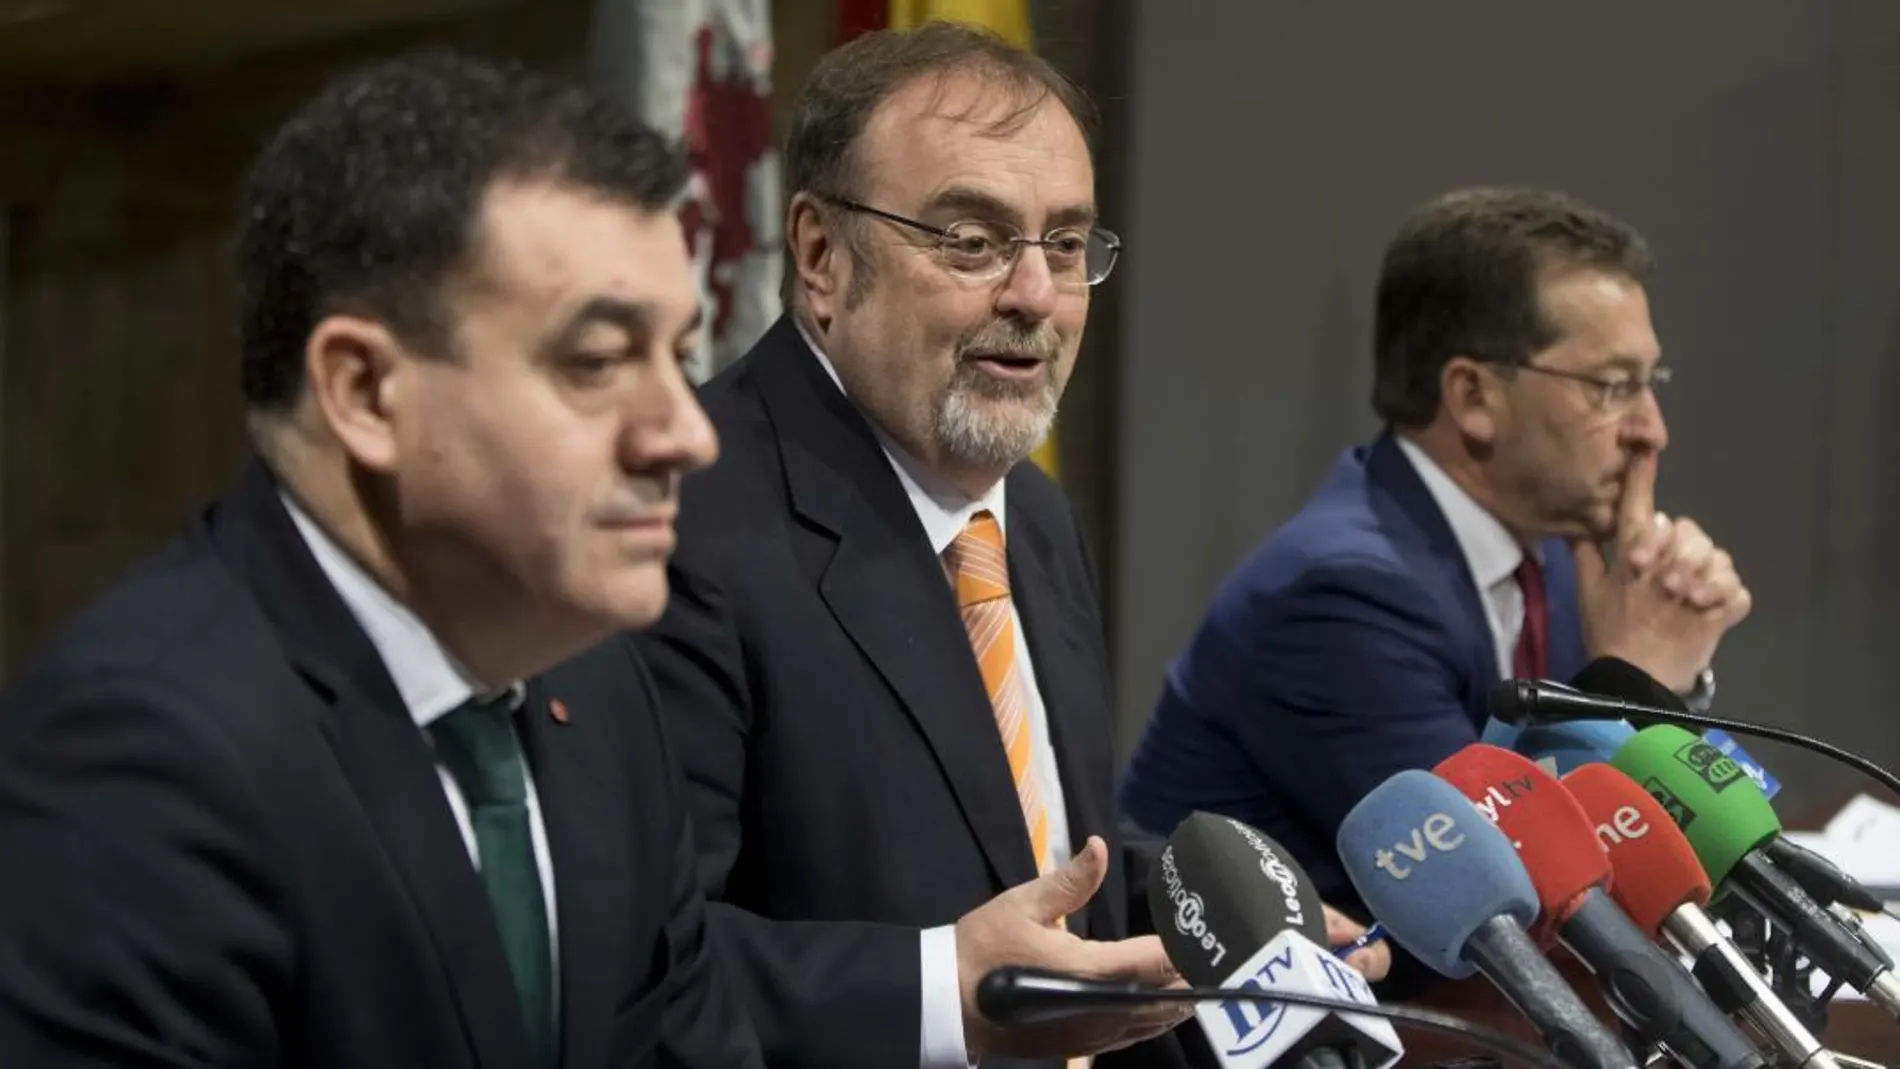 El consejero Fernando Rey expone las conclusiones de su reunión con Román Rodríguez y Genaro Alonso